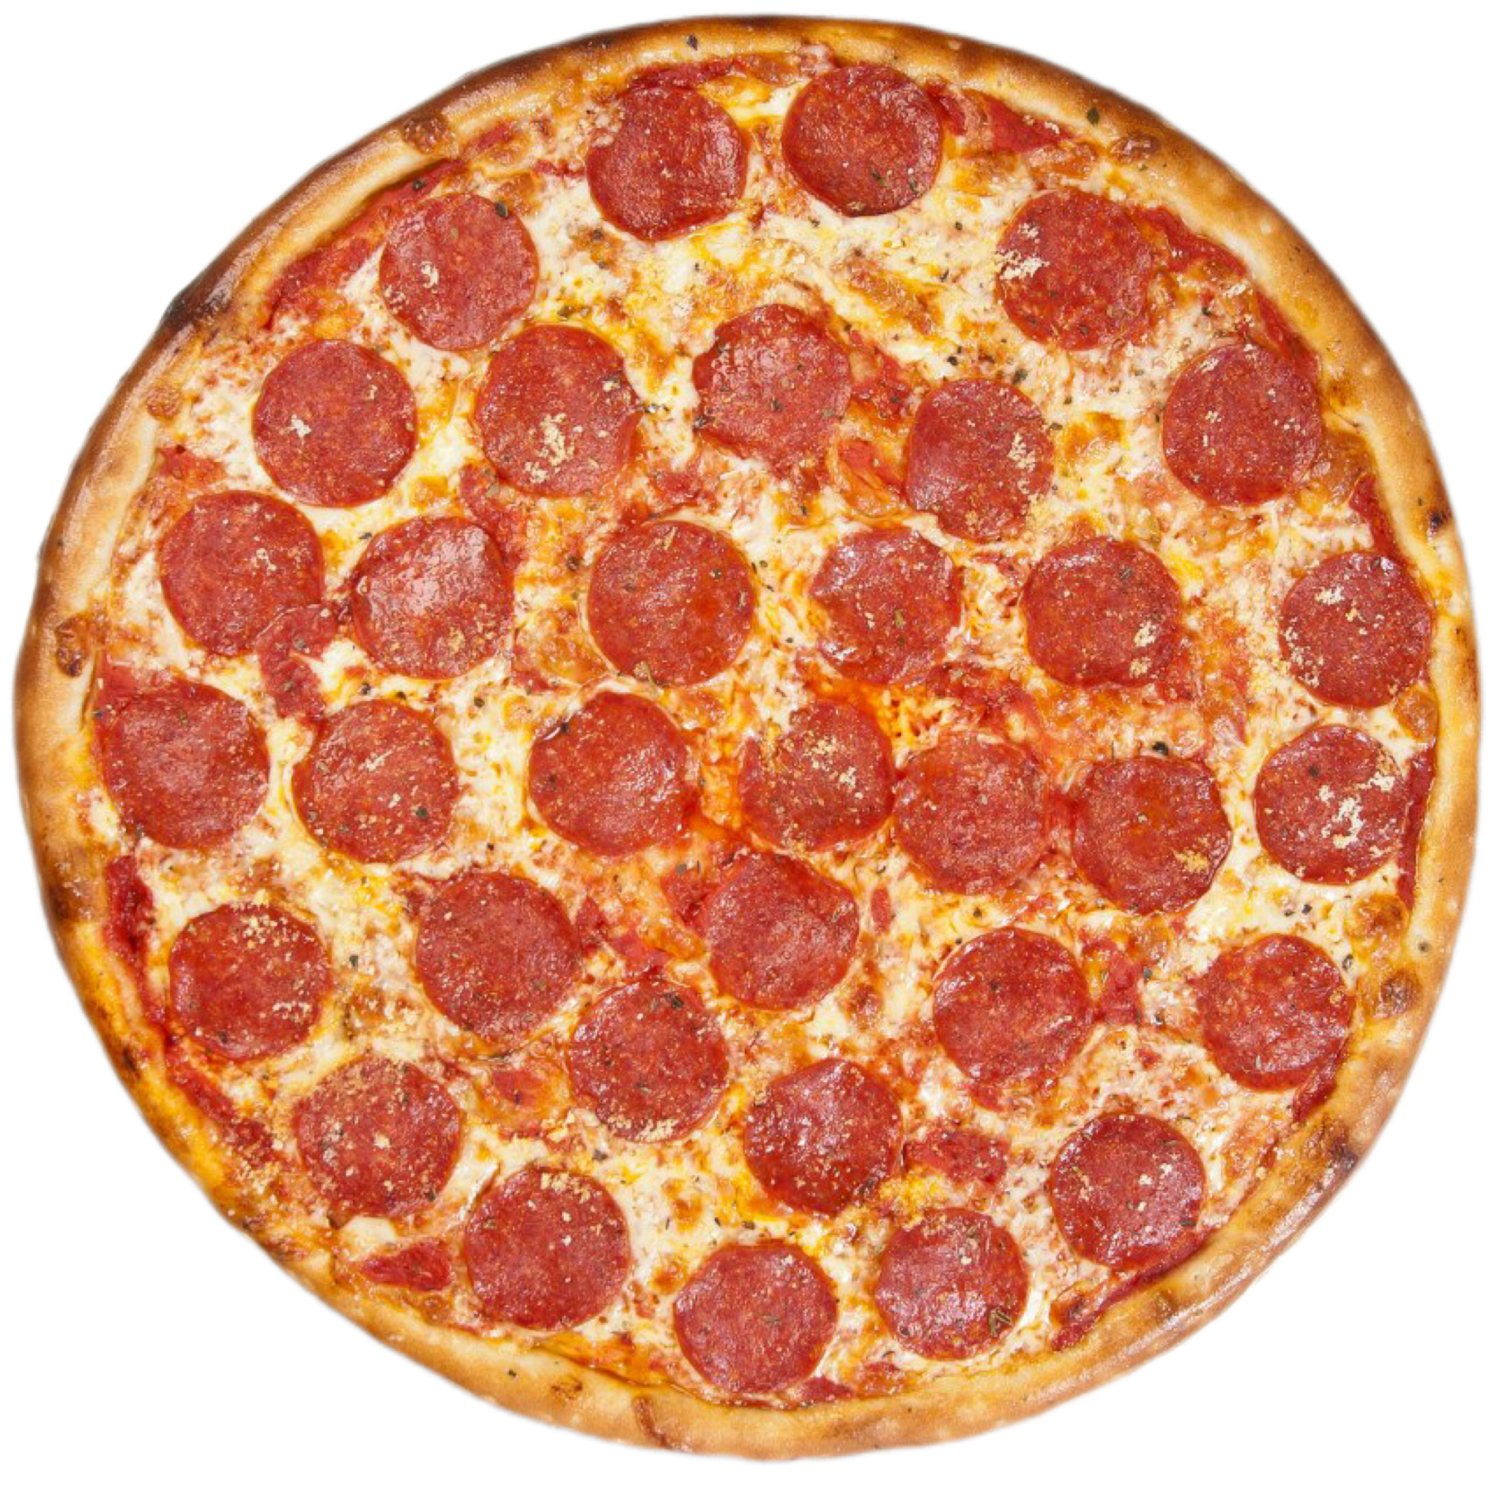 специи для пиццы пепперони фото 115